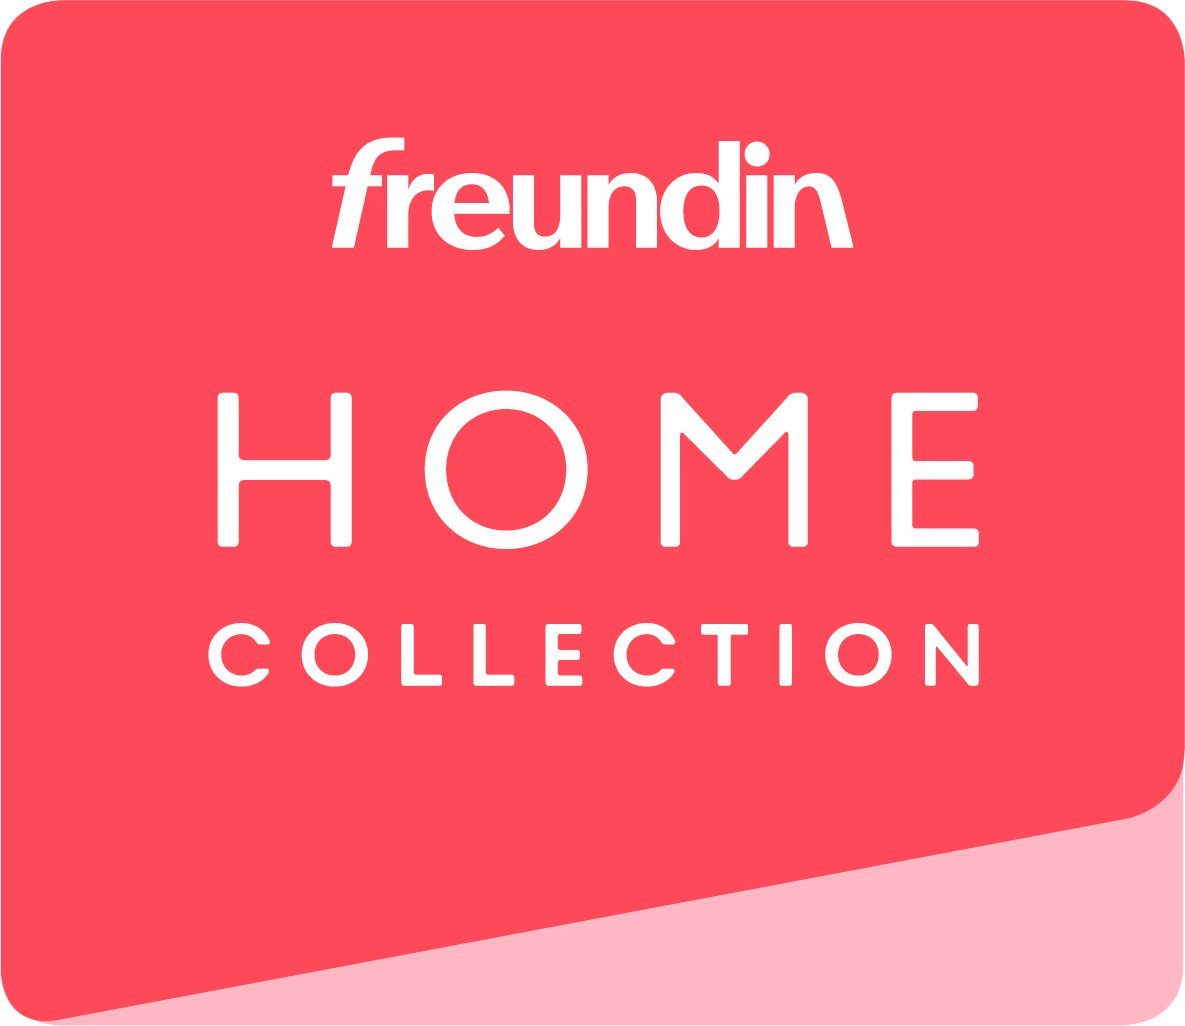 MERLE Kleiderschrank Home andas aus freundin Design, skandinavischen der Collection im